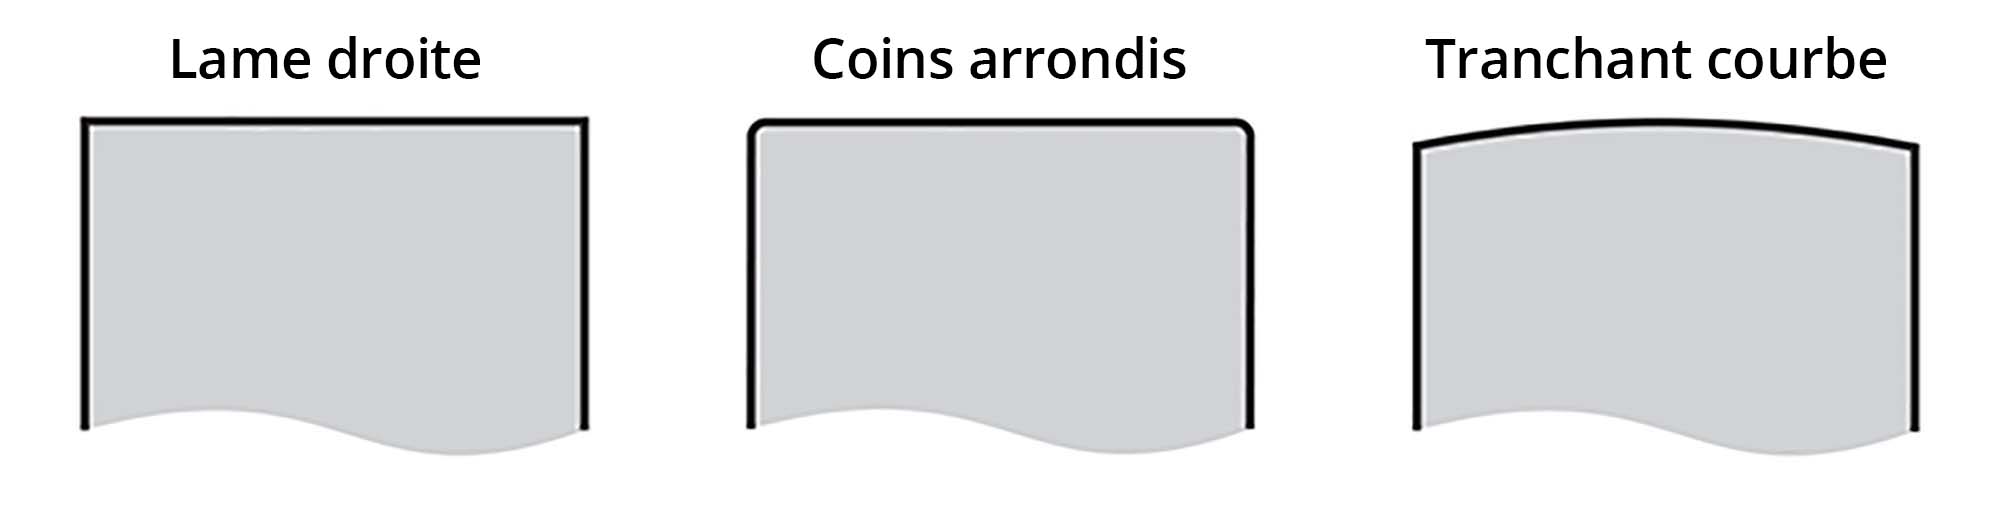 Image de gauche : Lame droite. Image de milieu : Coins arrondis. Image de droite : Tranchant courbe.